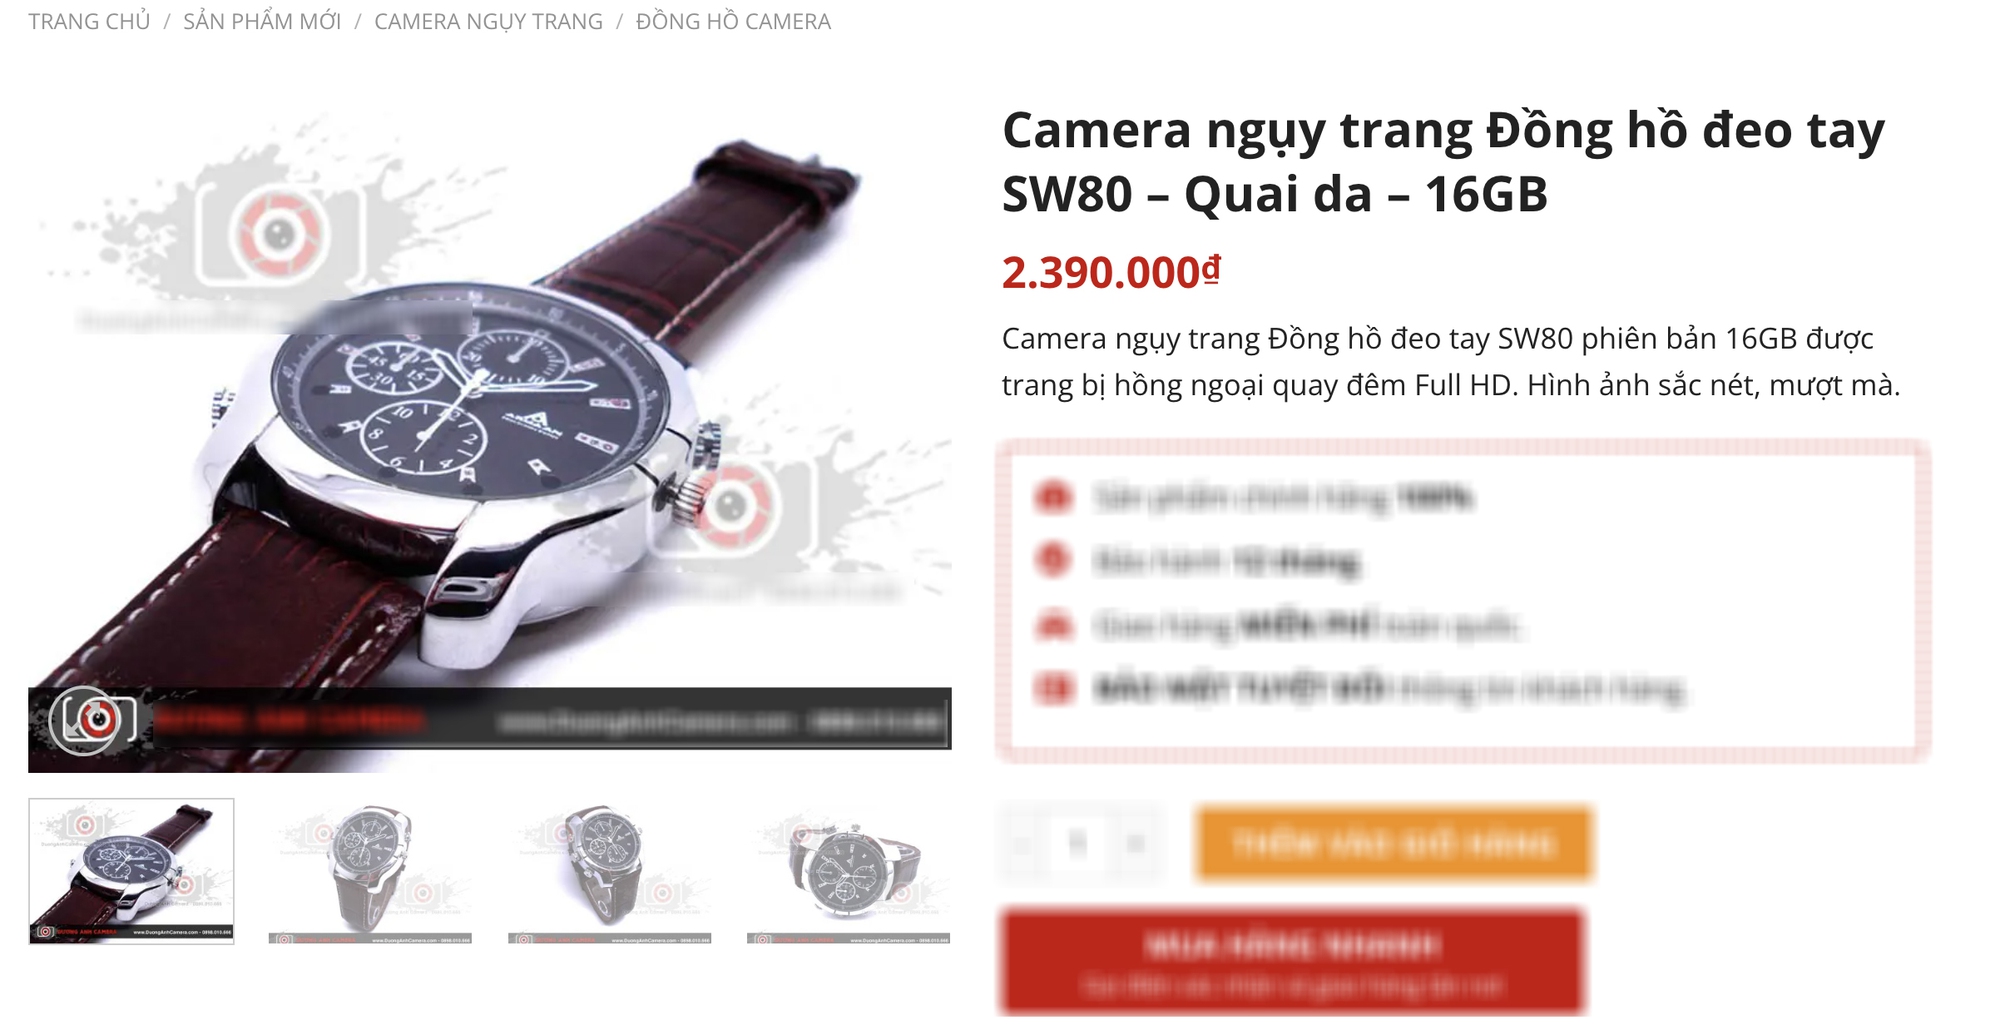 Đồng hồ giả camera quay lén Châu Bùi được bán tràn lan, nhận diện những mẫu đồng hồ phải đặc biệt cảnh giác!- Ảnh 7.